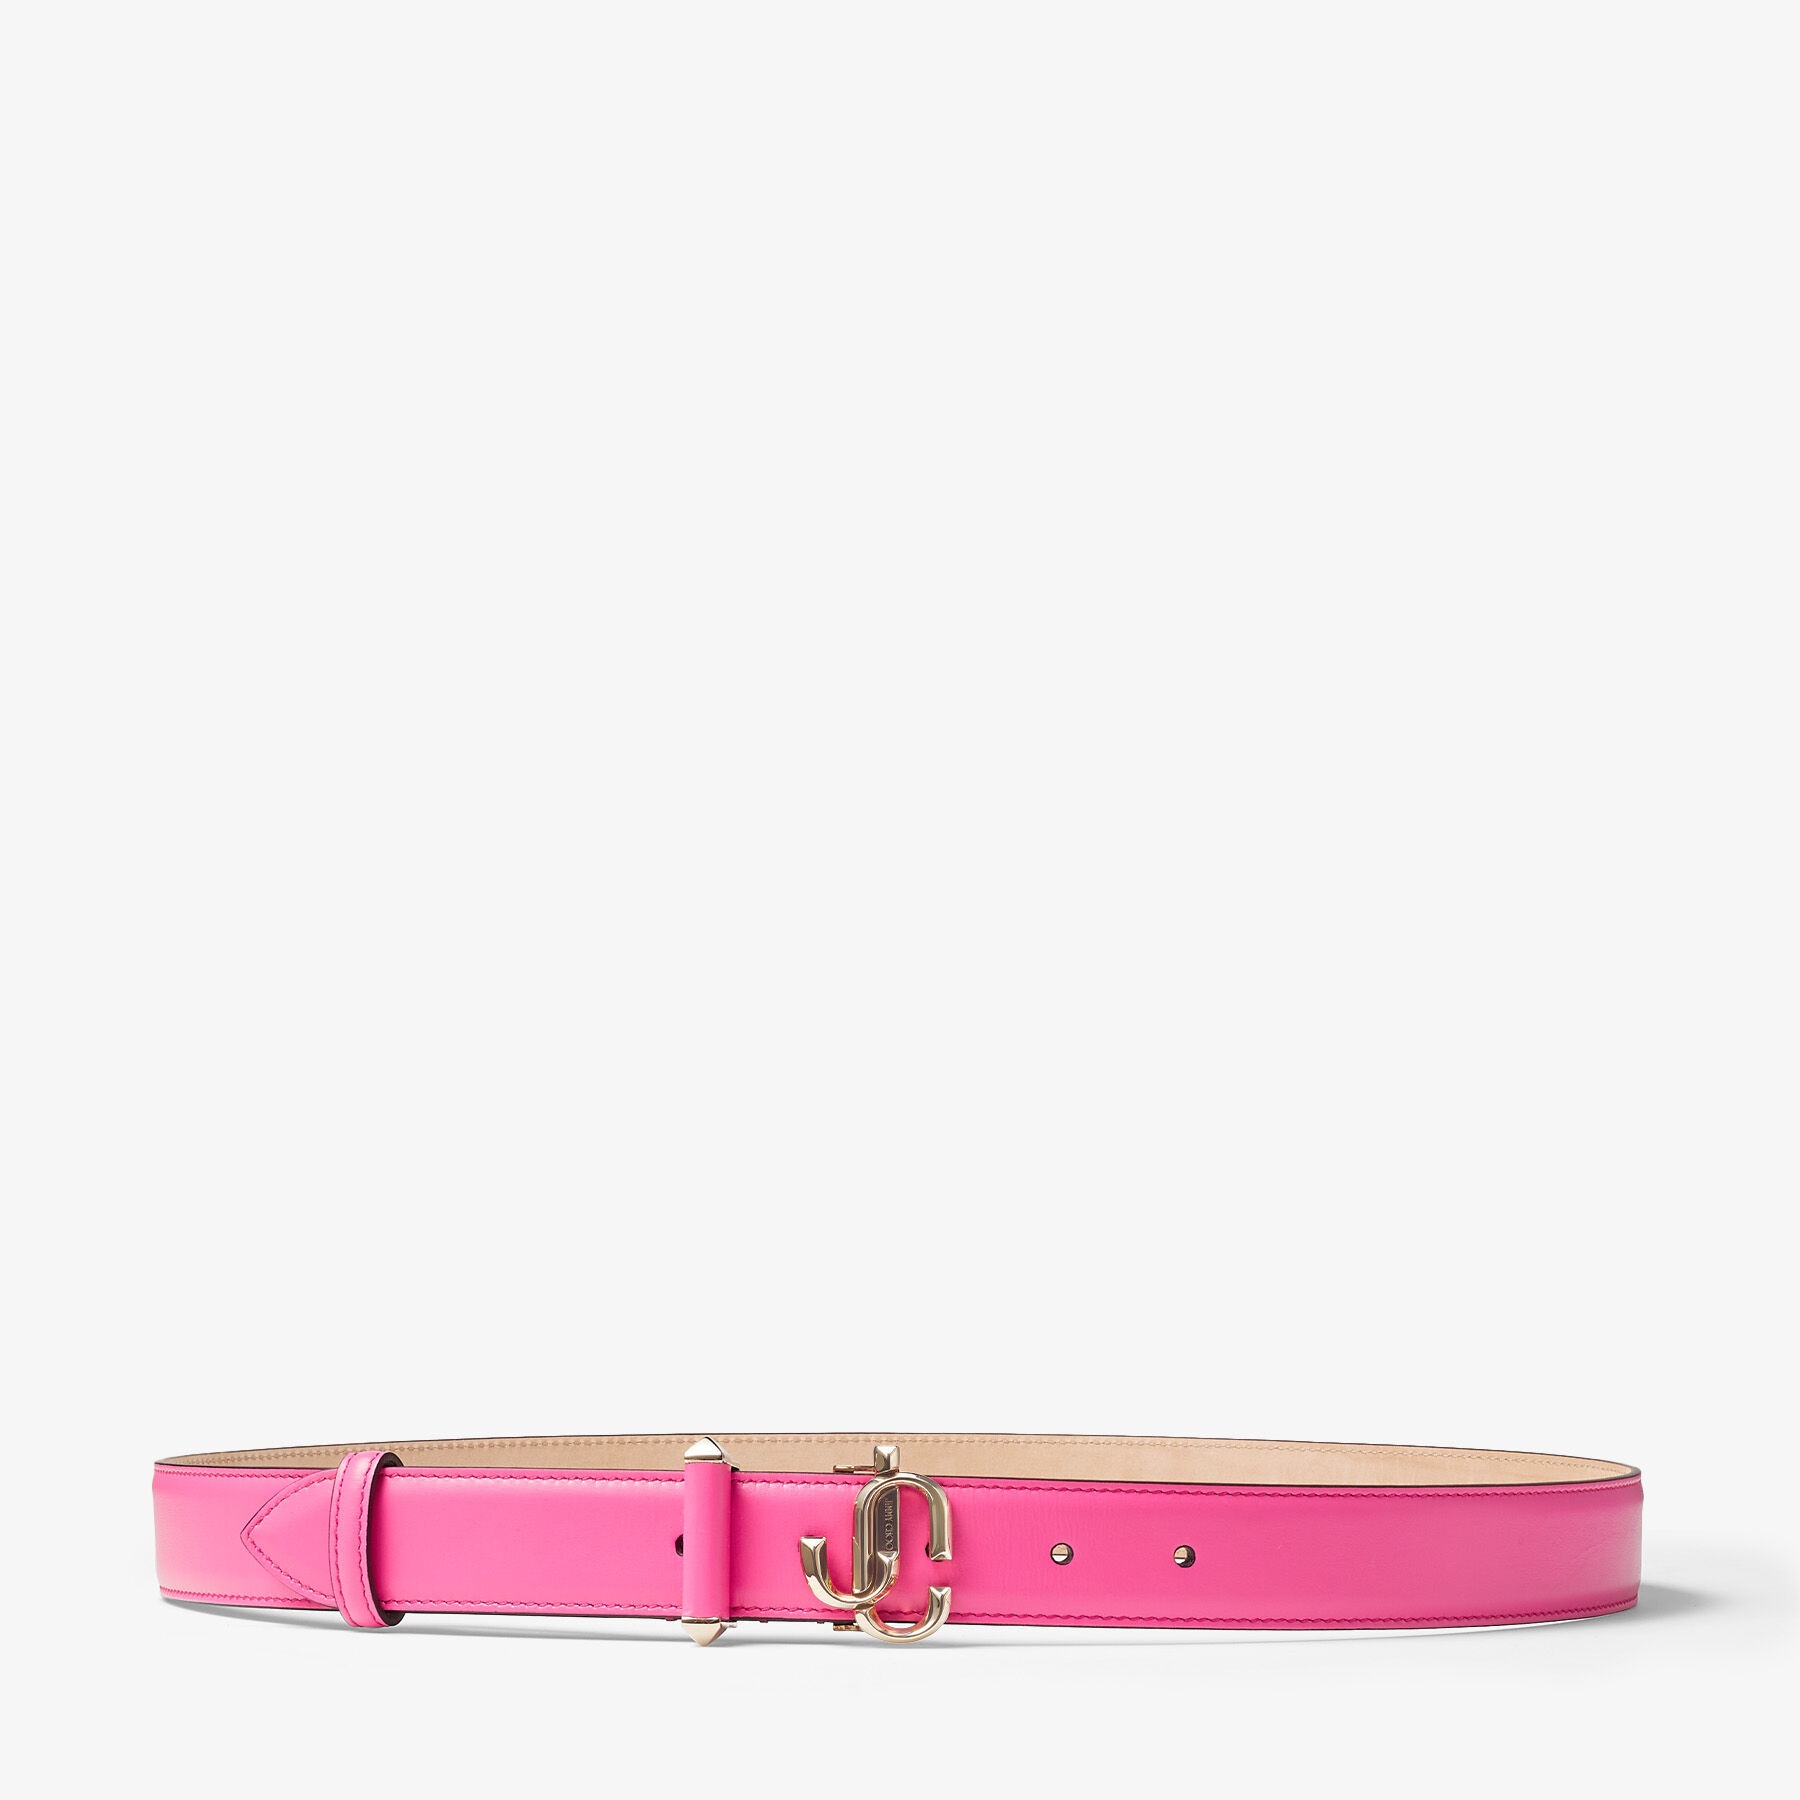 Jc-bar Blt
Candy Pink Calf Leather Bar Belt with JC Emblem - 1